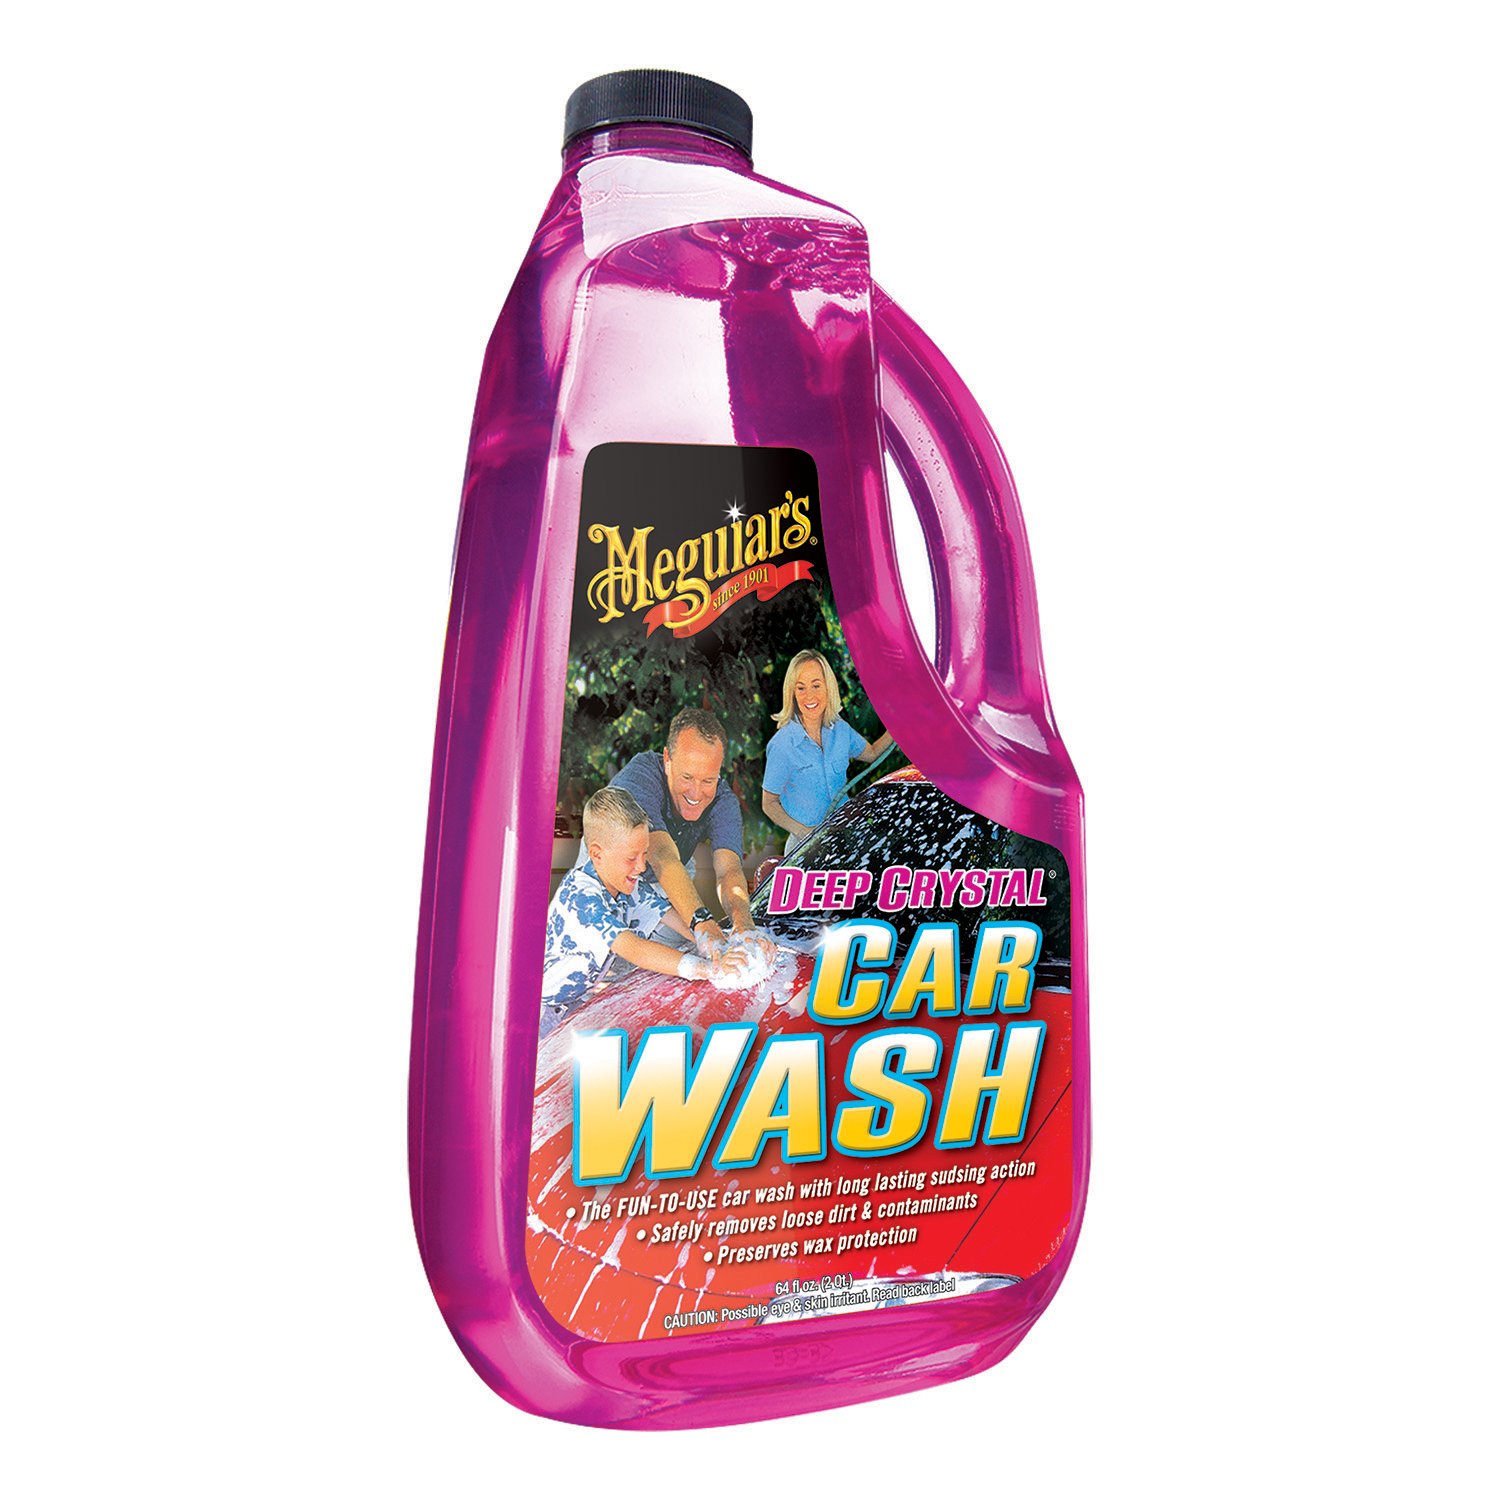 Meguiar's Gold Class Car Wash Shampoo & Conditioner  - 64 fl oz bottle